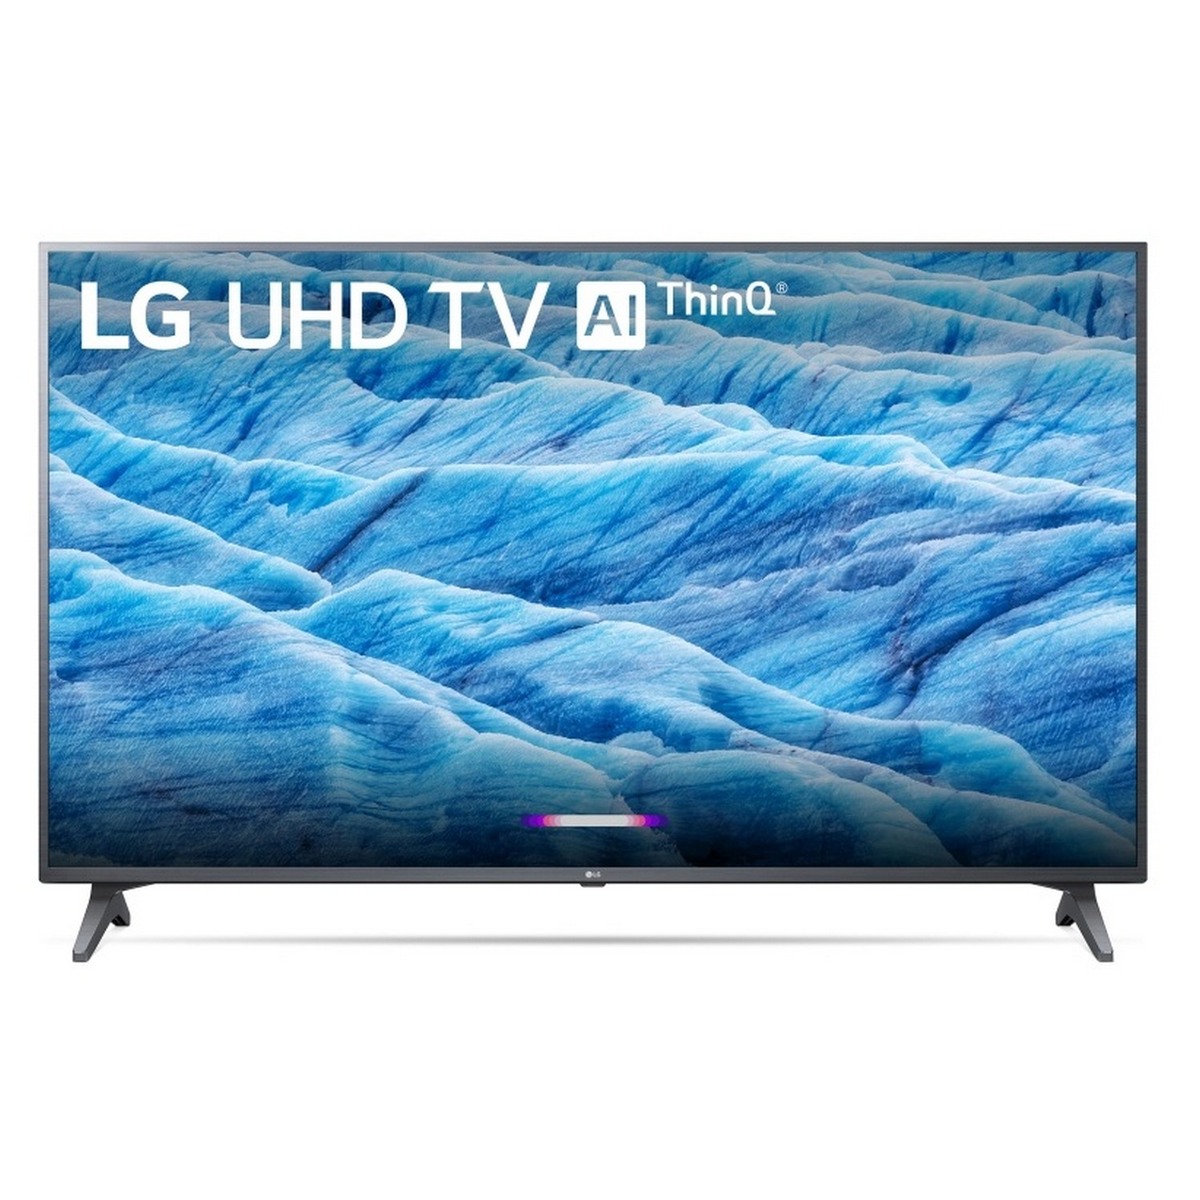 LG 4K Ultra HD LED Smart TV 43UM7300 43"